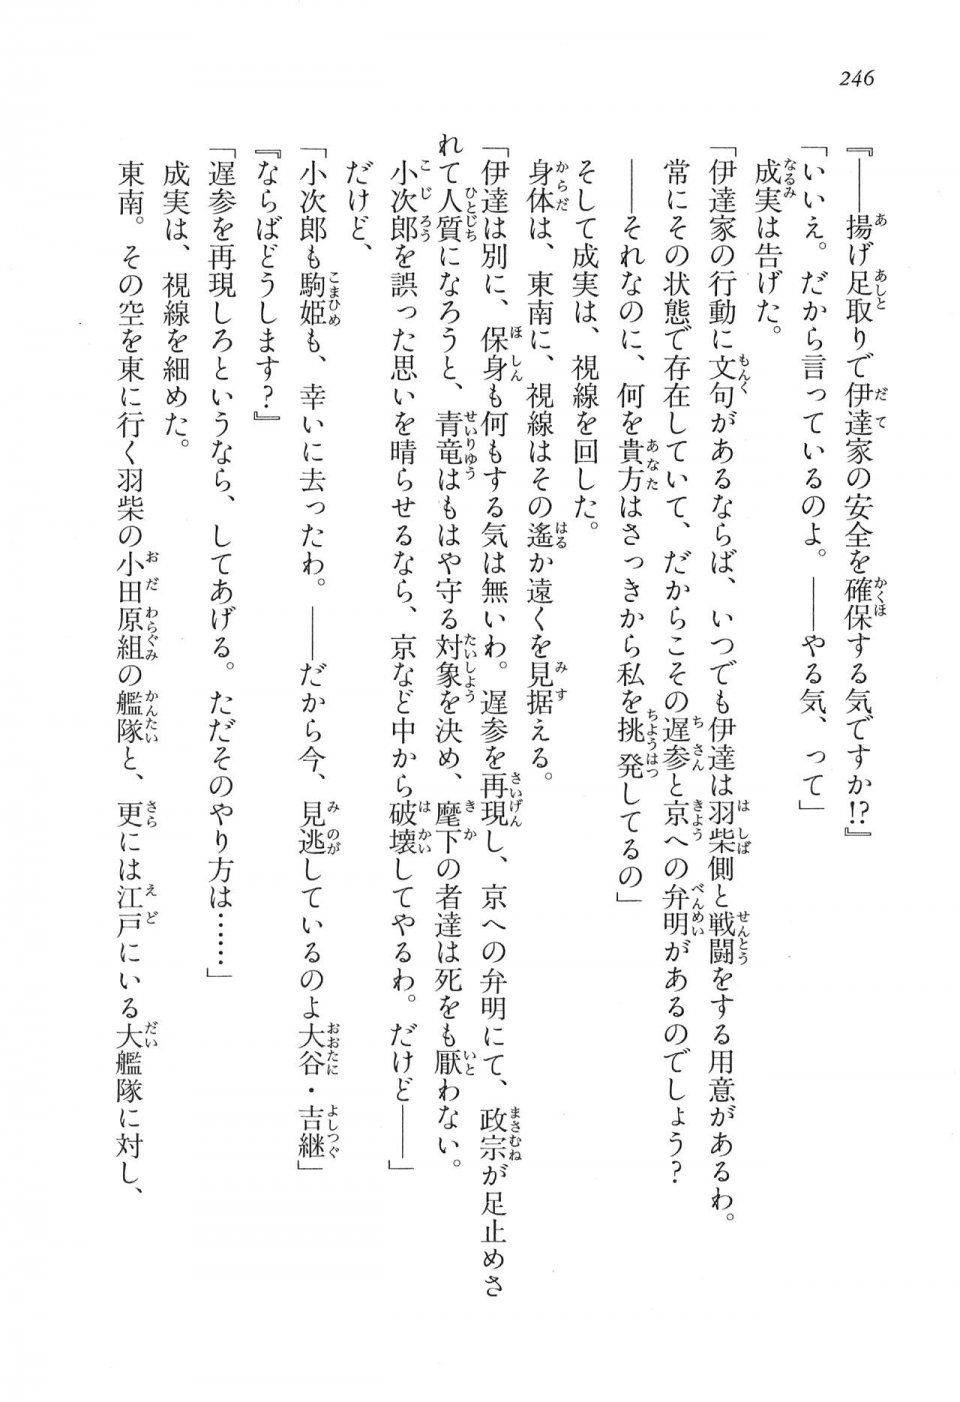 Kyoukai Senjou no Horizon LN Vol 16(7A) - Photo #246